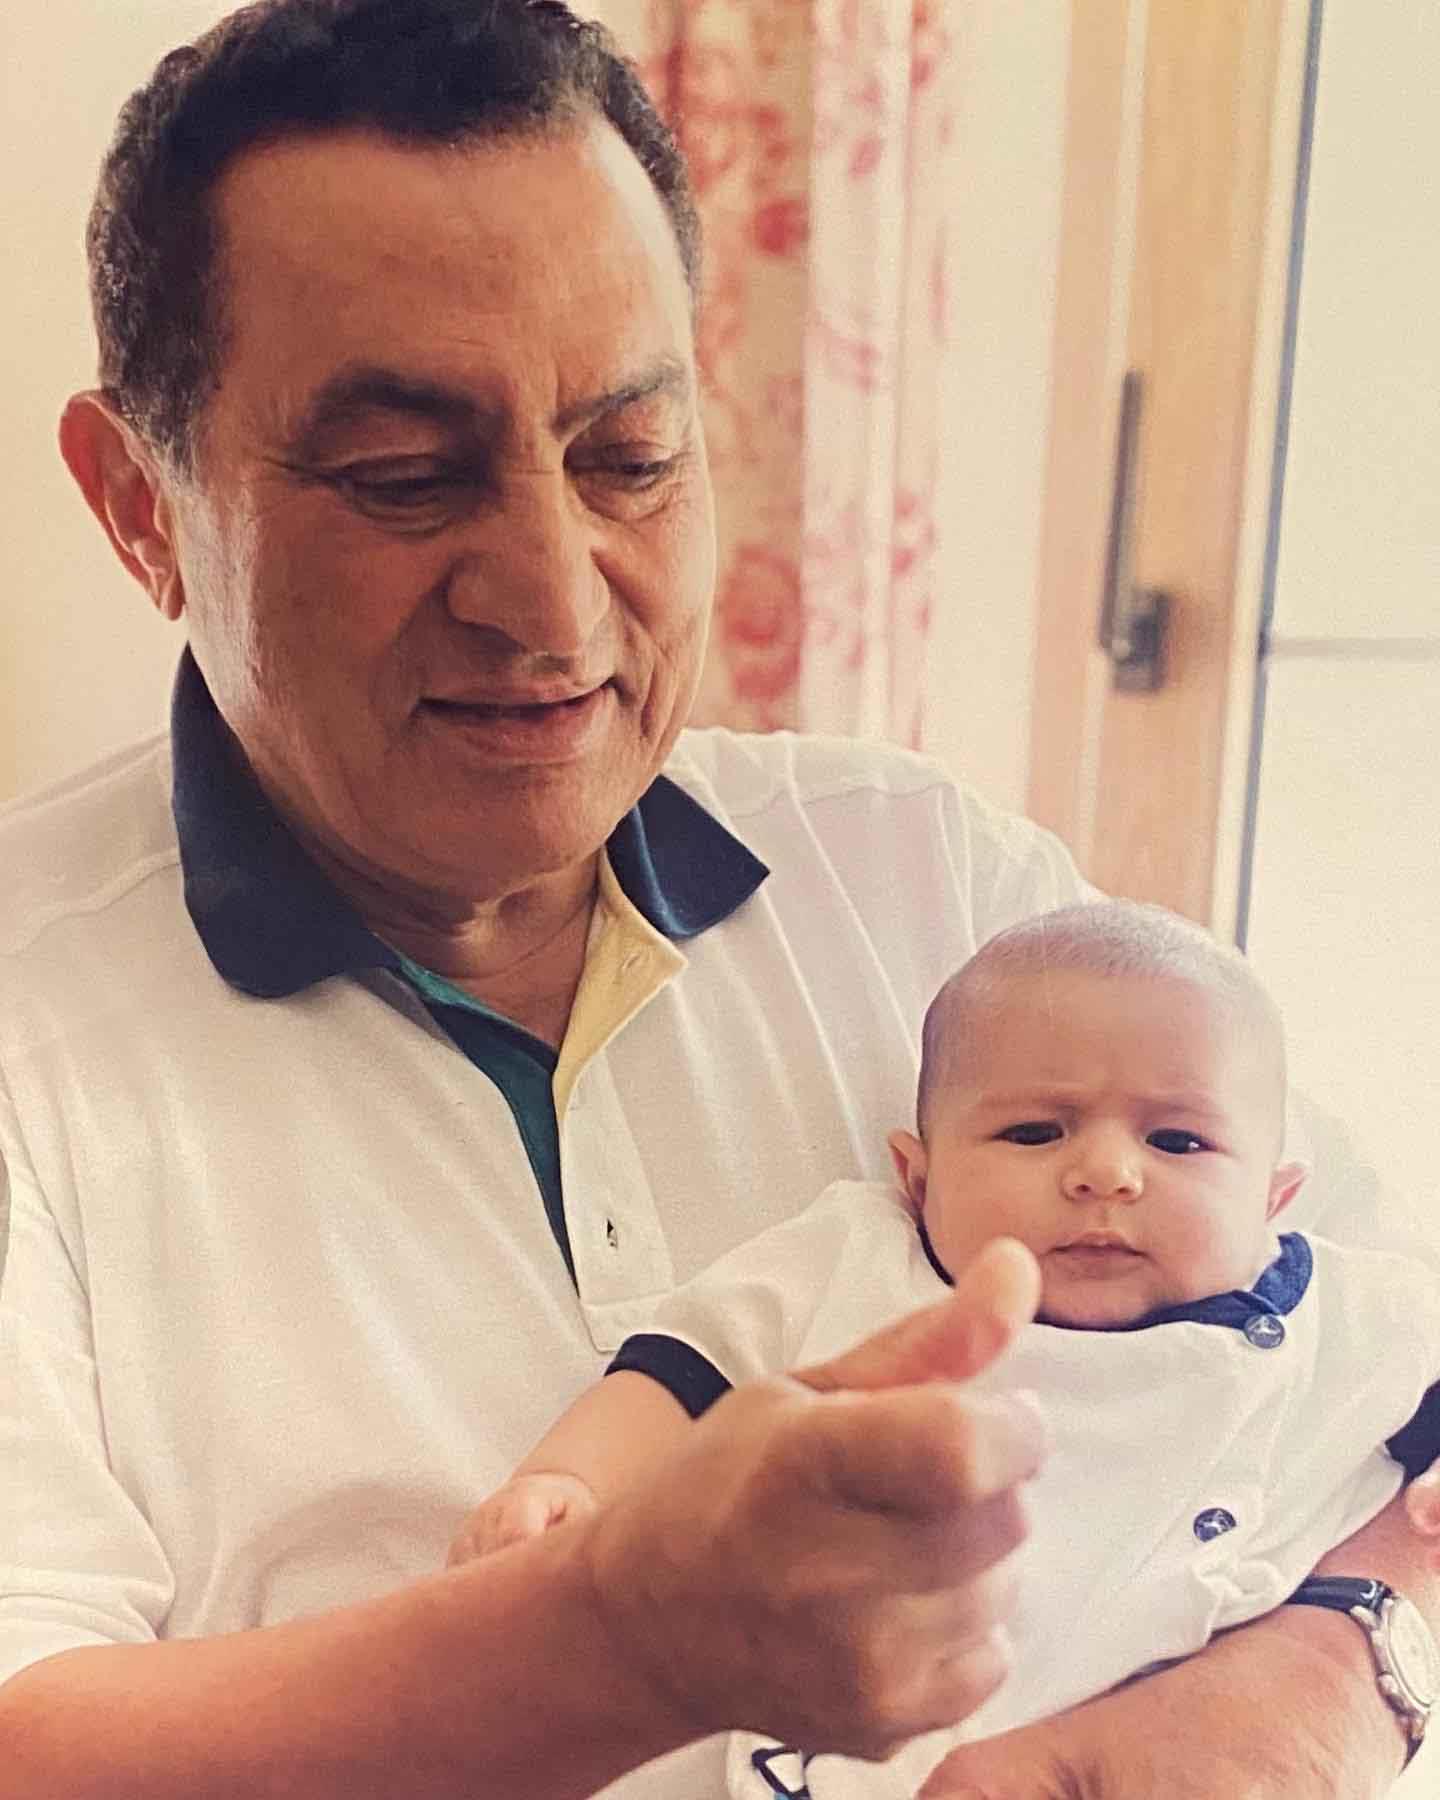 حفيد الرئيس الأسبق حسني مبارك وصورة تجمعهما